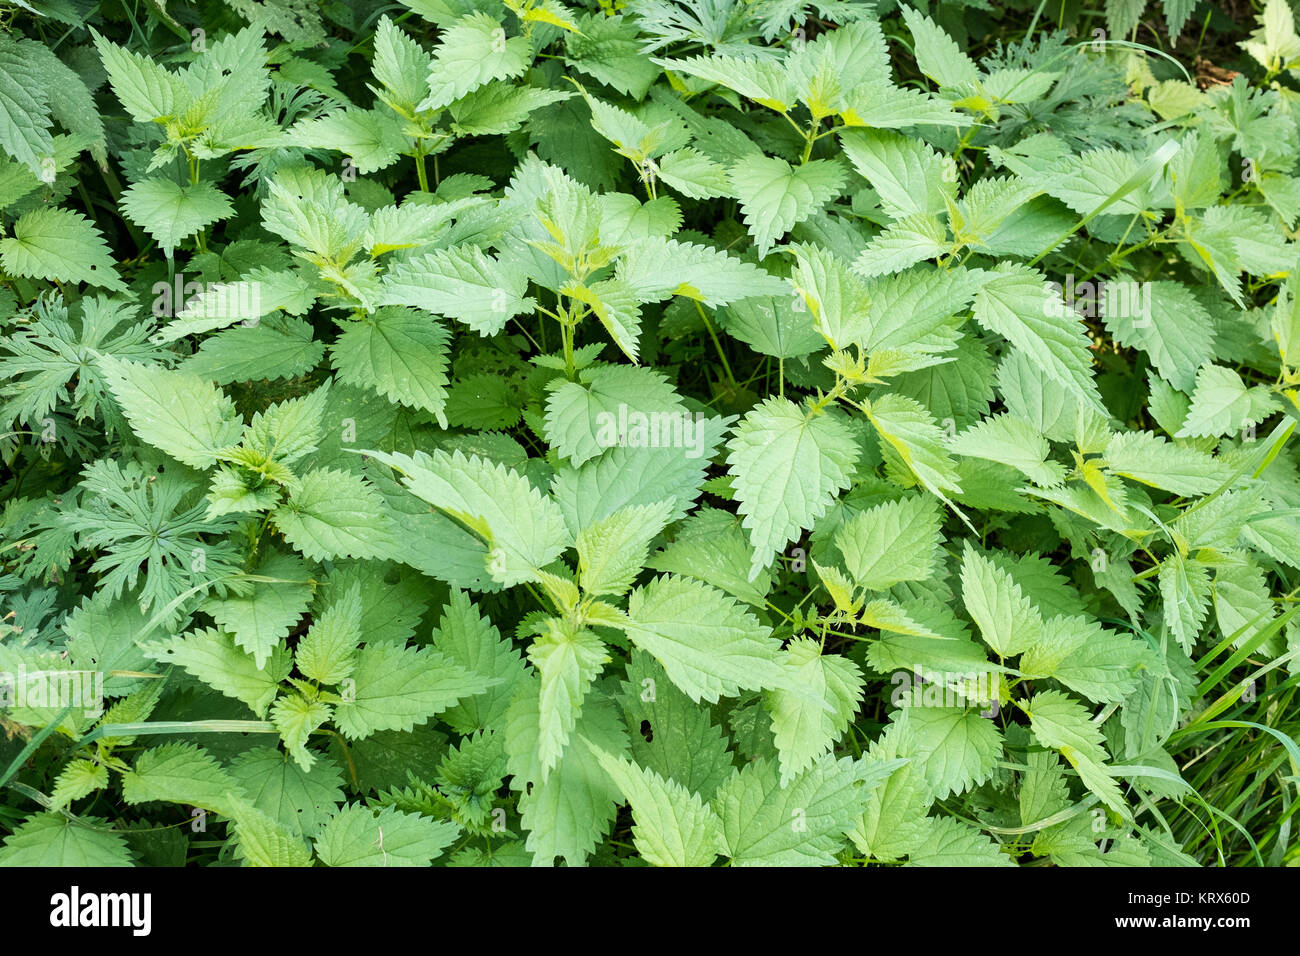 Grüne Brennesseln als Heilpflanze im Querformat Stock Photo